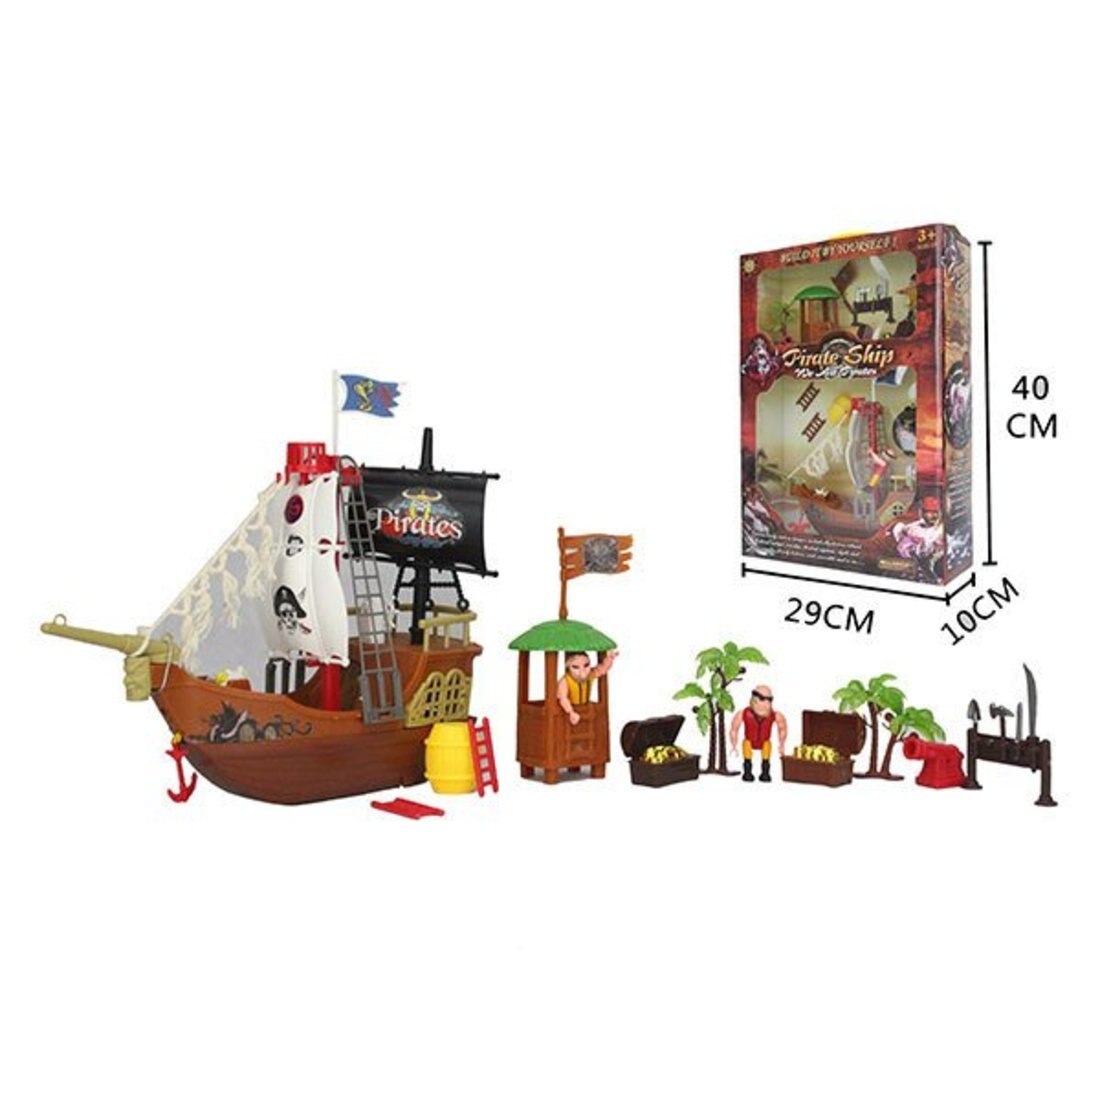 Игровой набор Пираты, коробка (Вид 1)